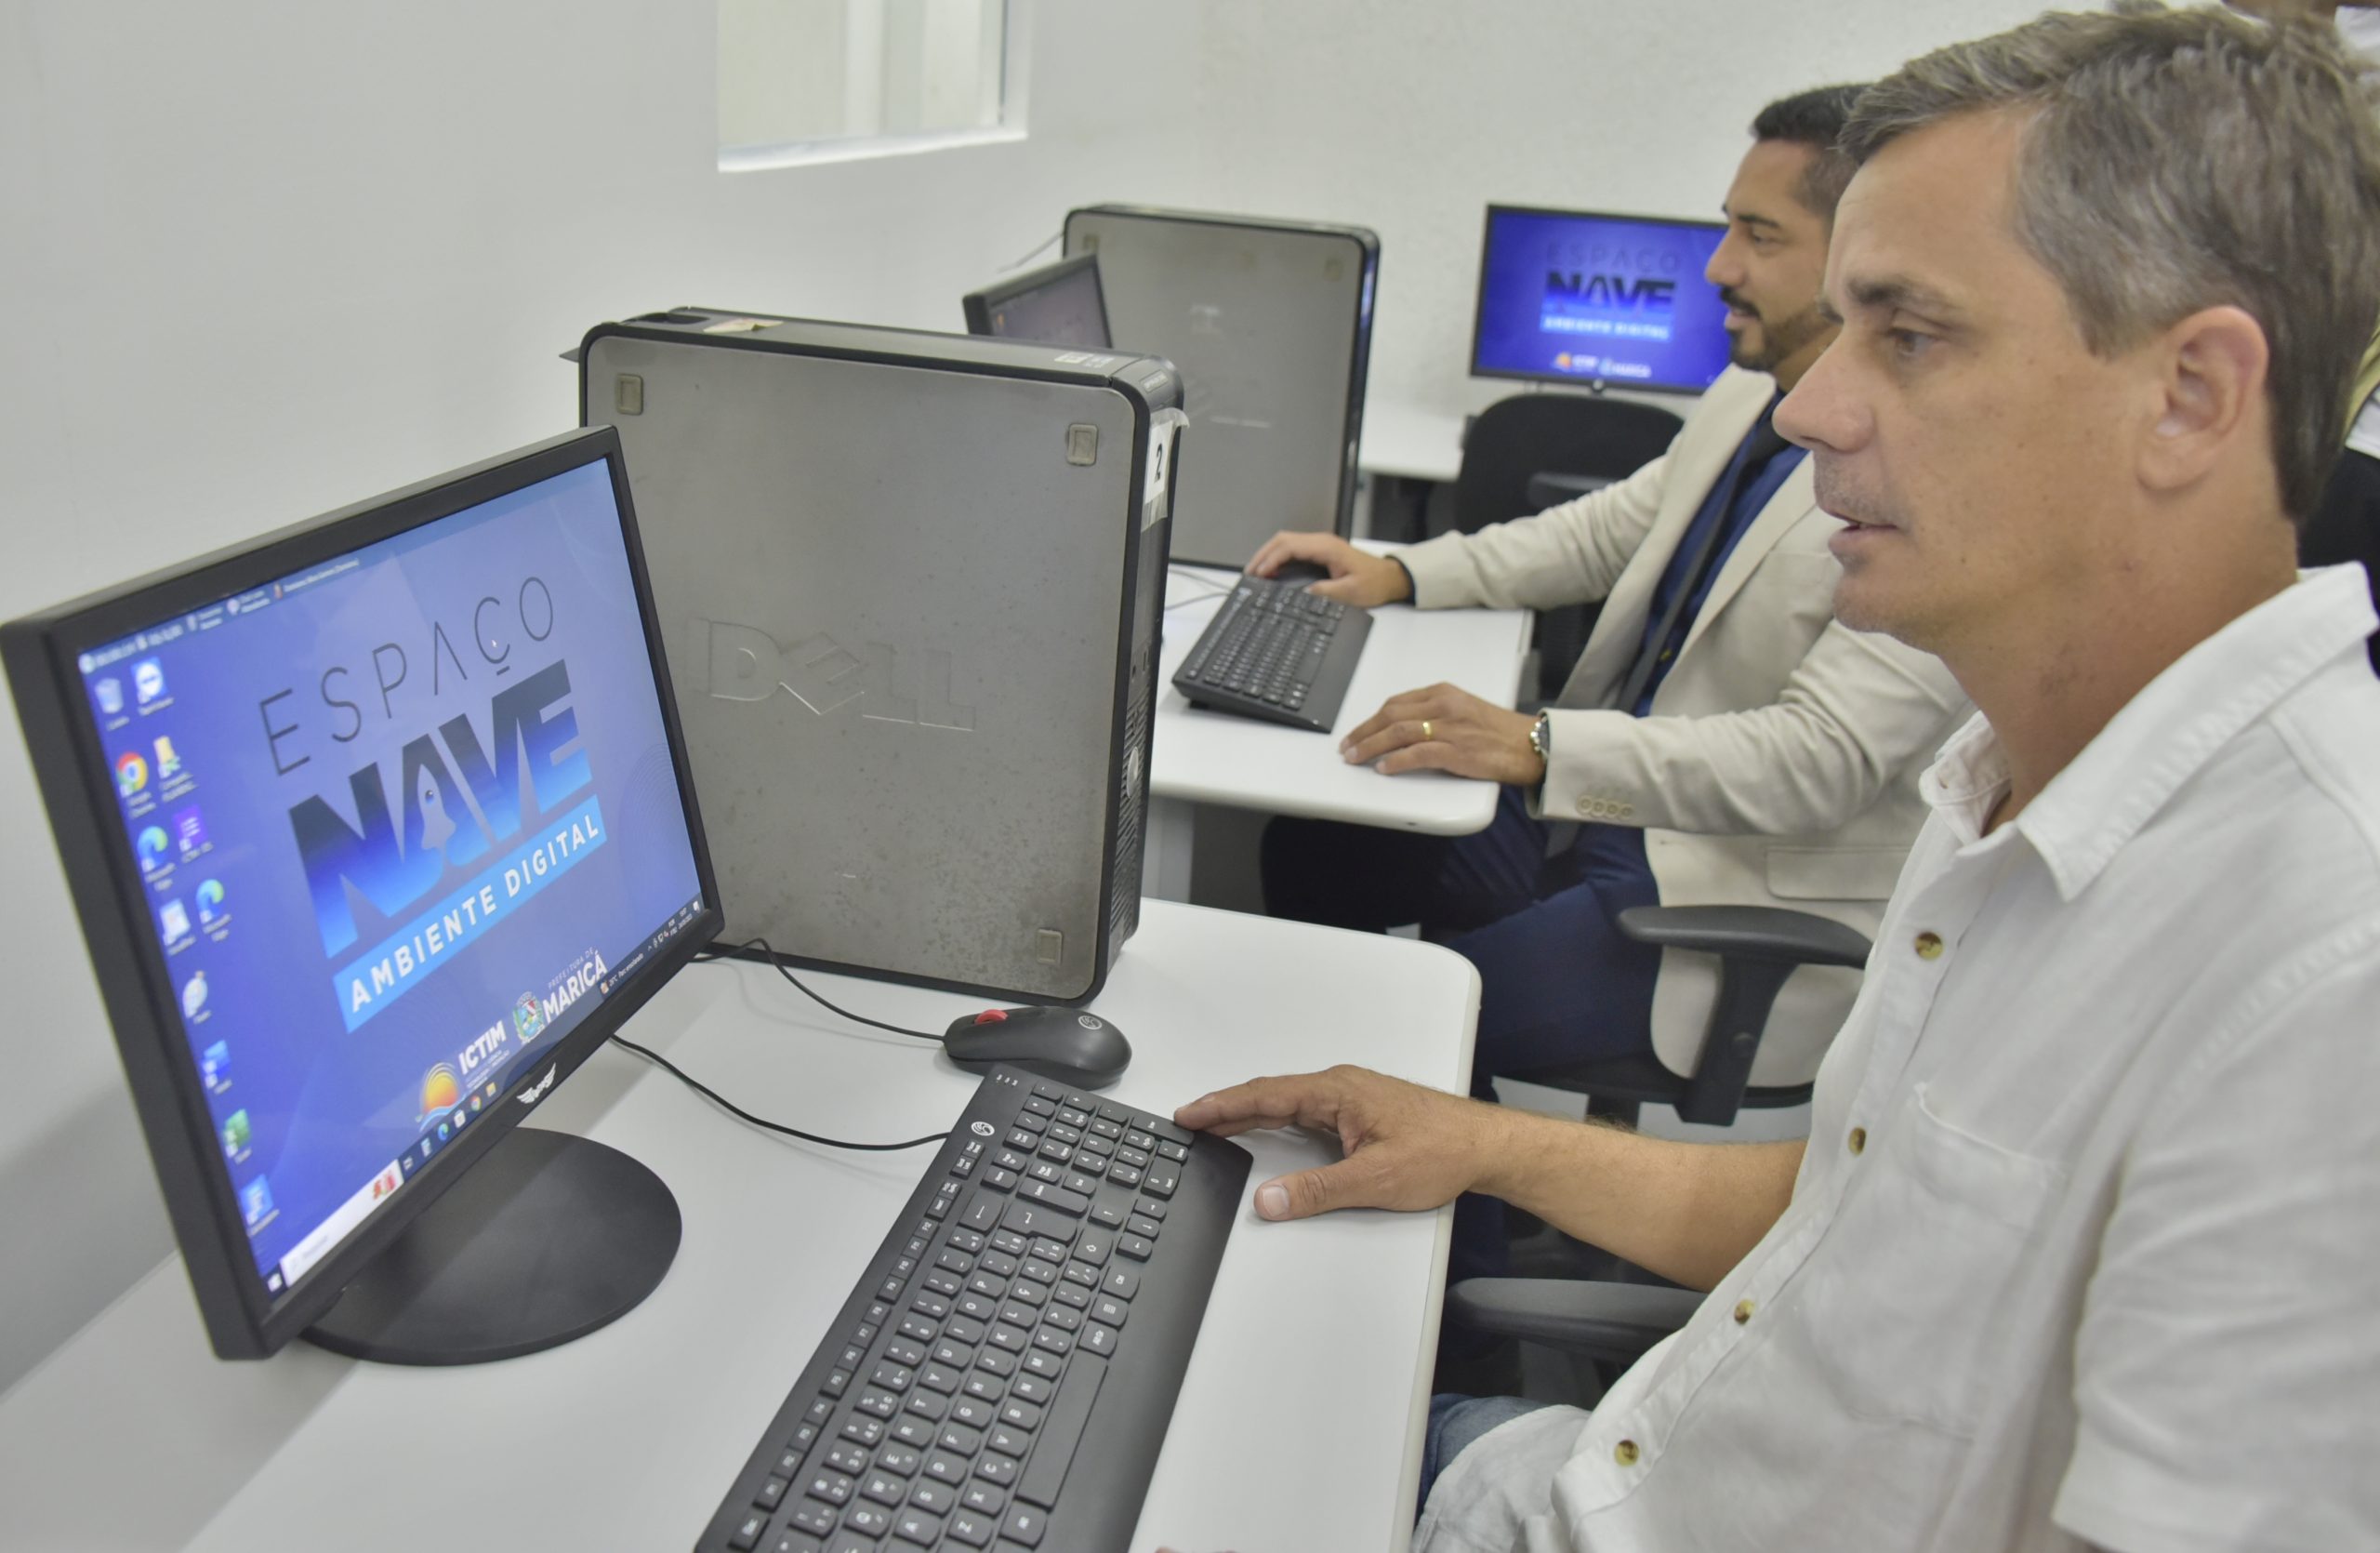 Prefeitura de Maricá inaugura Espaço Nave - Ambiente Digital no